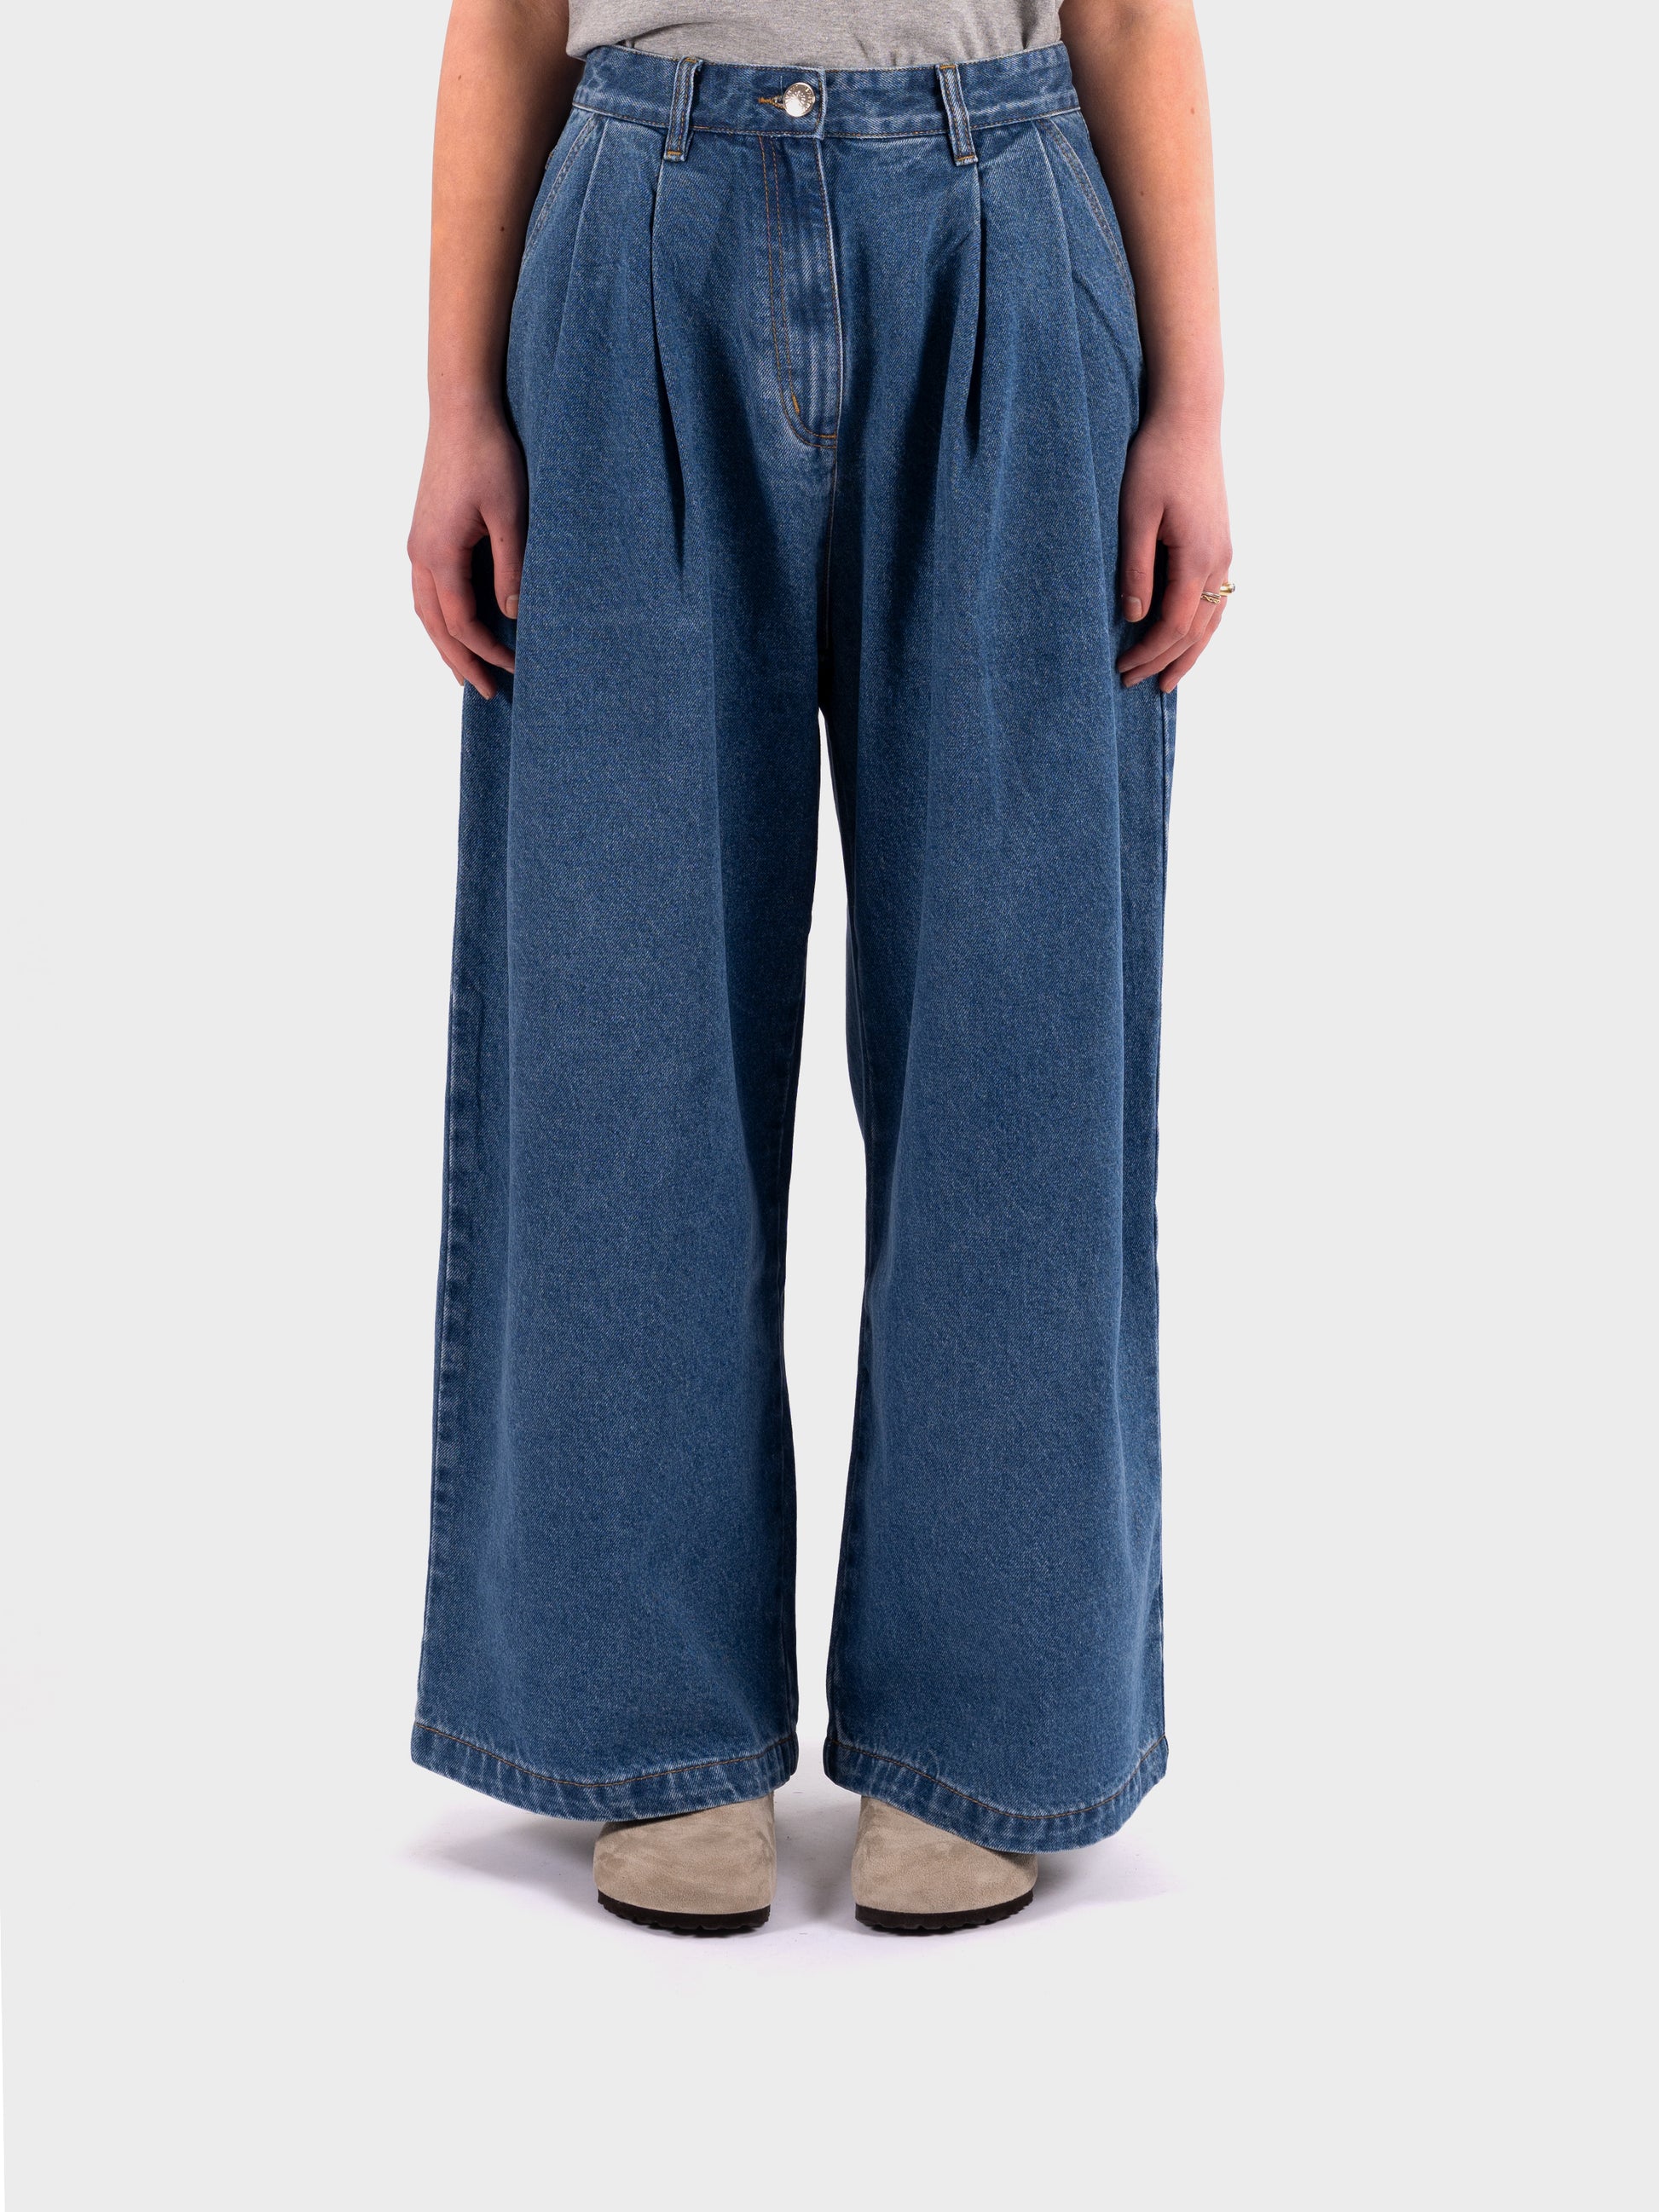 L.F Markey Myles Jeans - Mid Blue